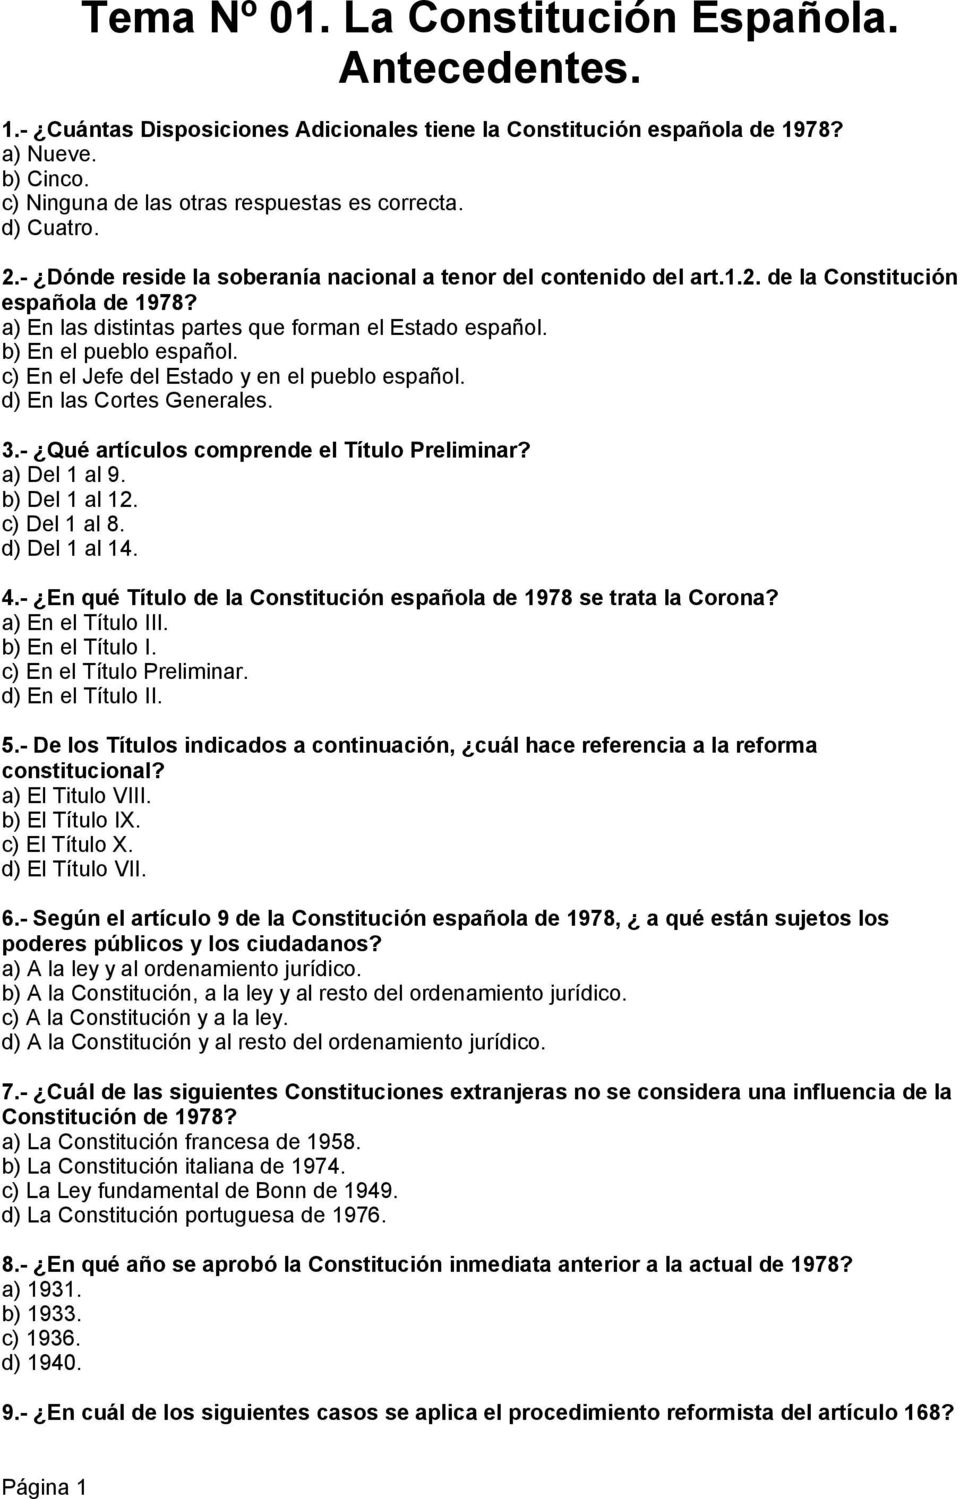 b) En el pueblo español. c) En el Jefe del Estado y en el pueblo español. d) En las Cortes Generales. 3.- Qué artículos comprende el Título Preliminar? a) Del 1 al 9. b) Del 1 al 12. c) Del 1 al 8.